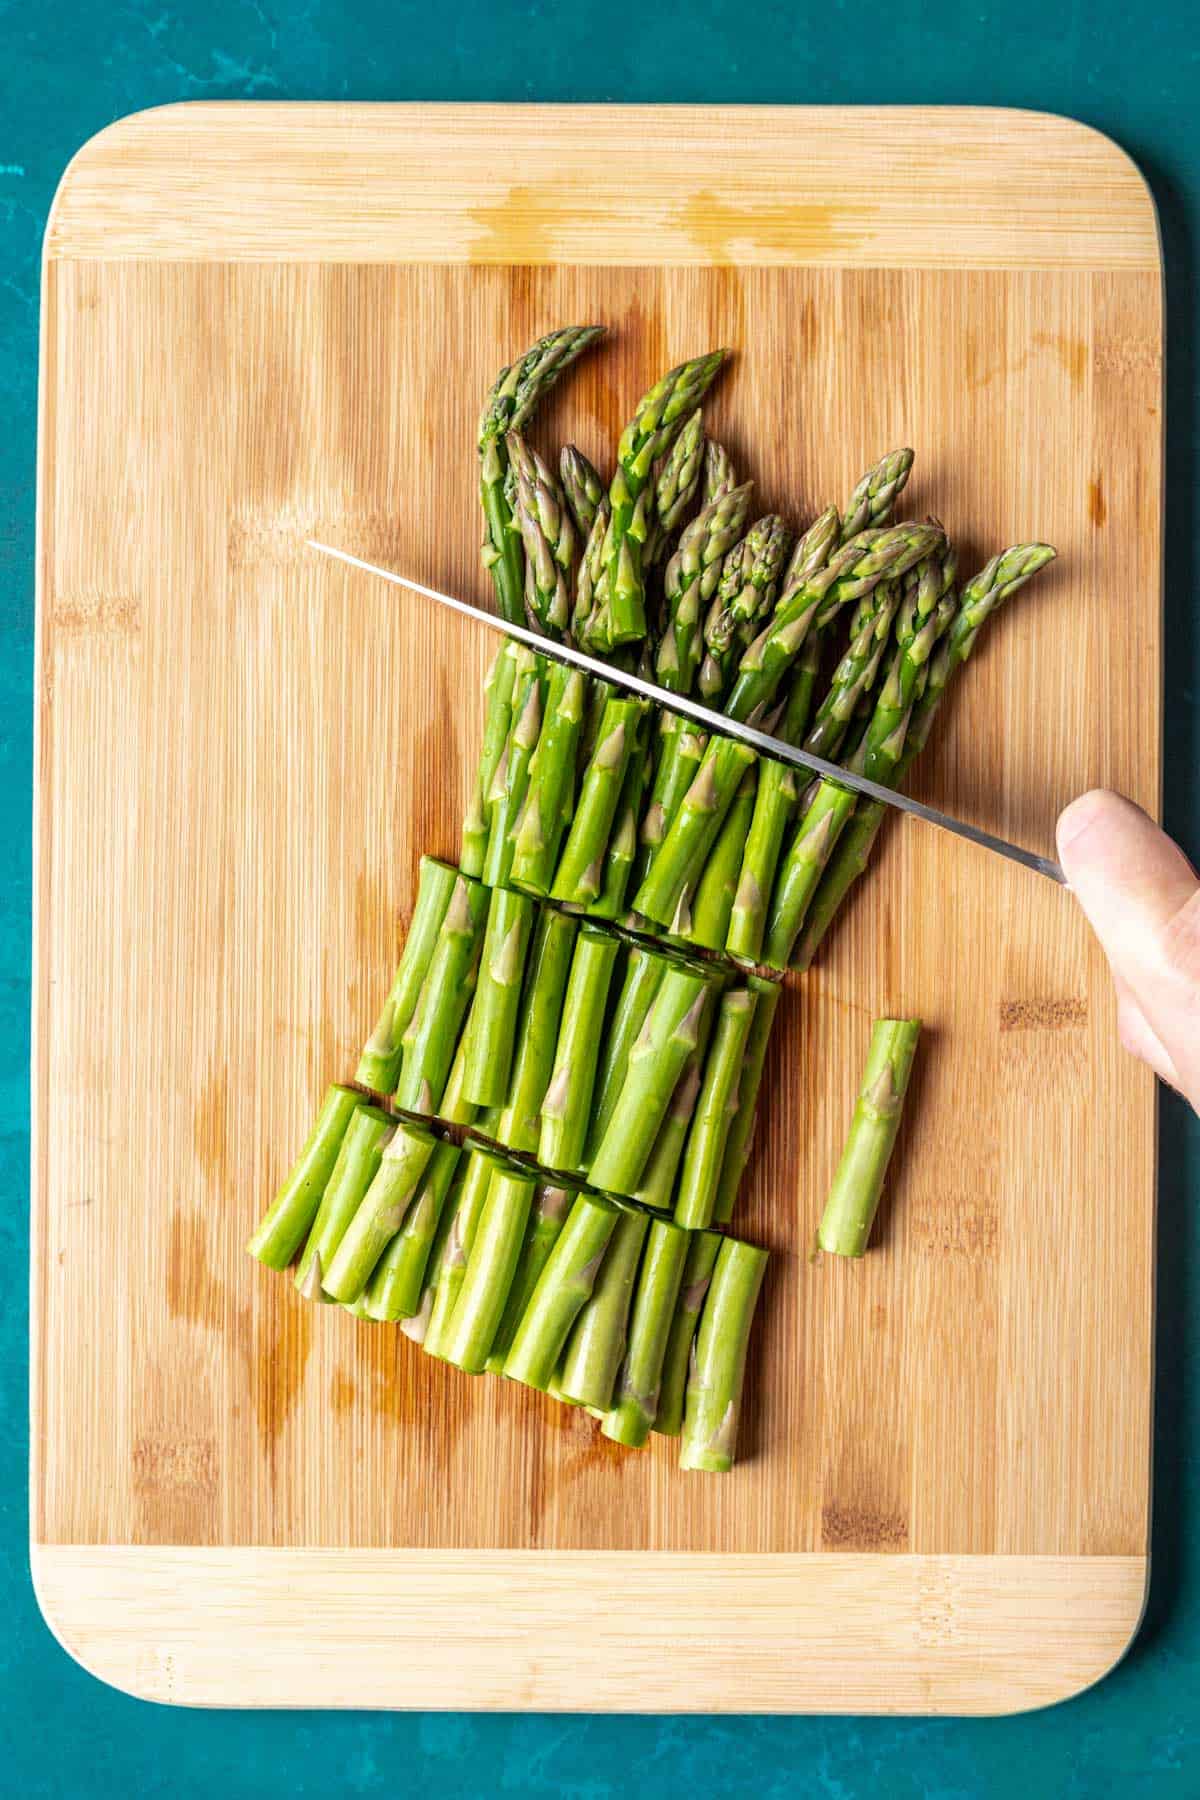 Chopping asparagus into smaller pieces.